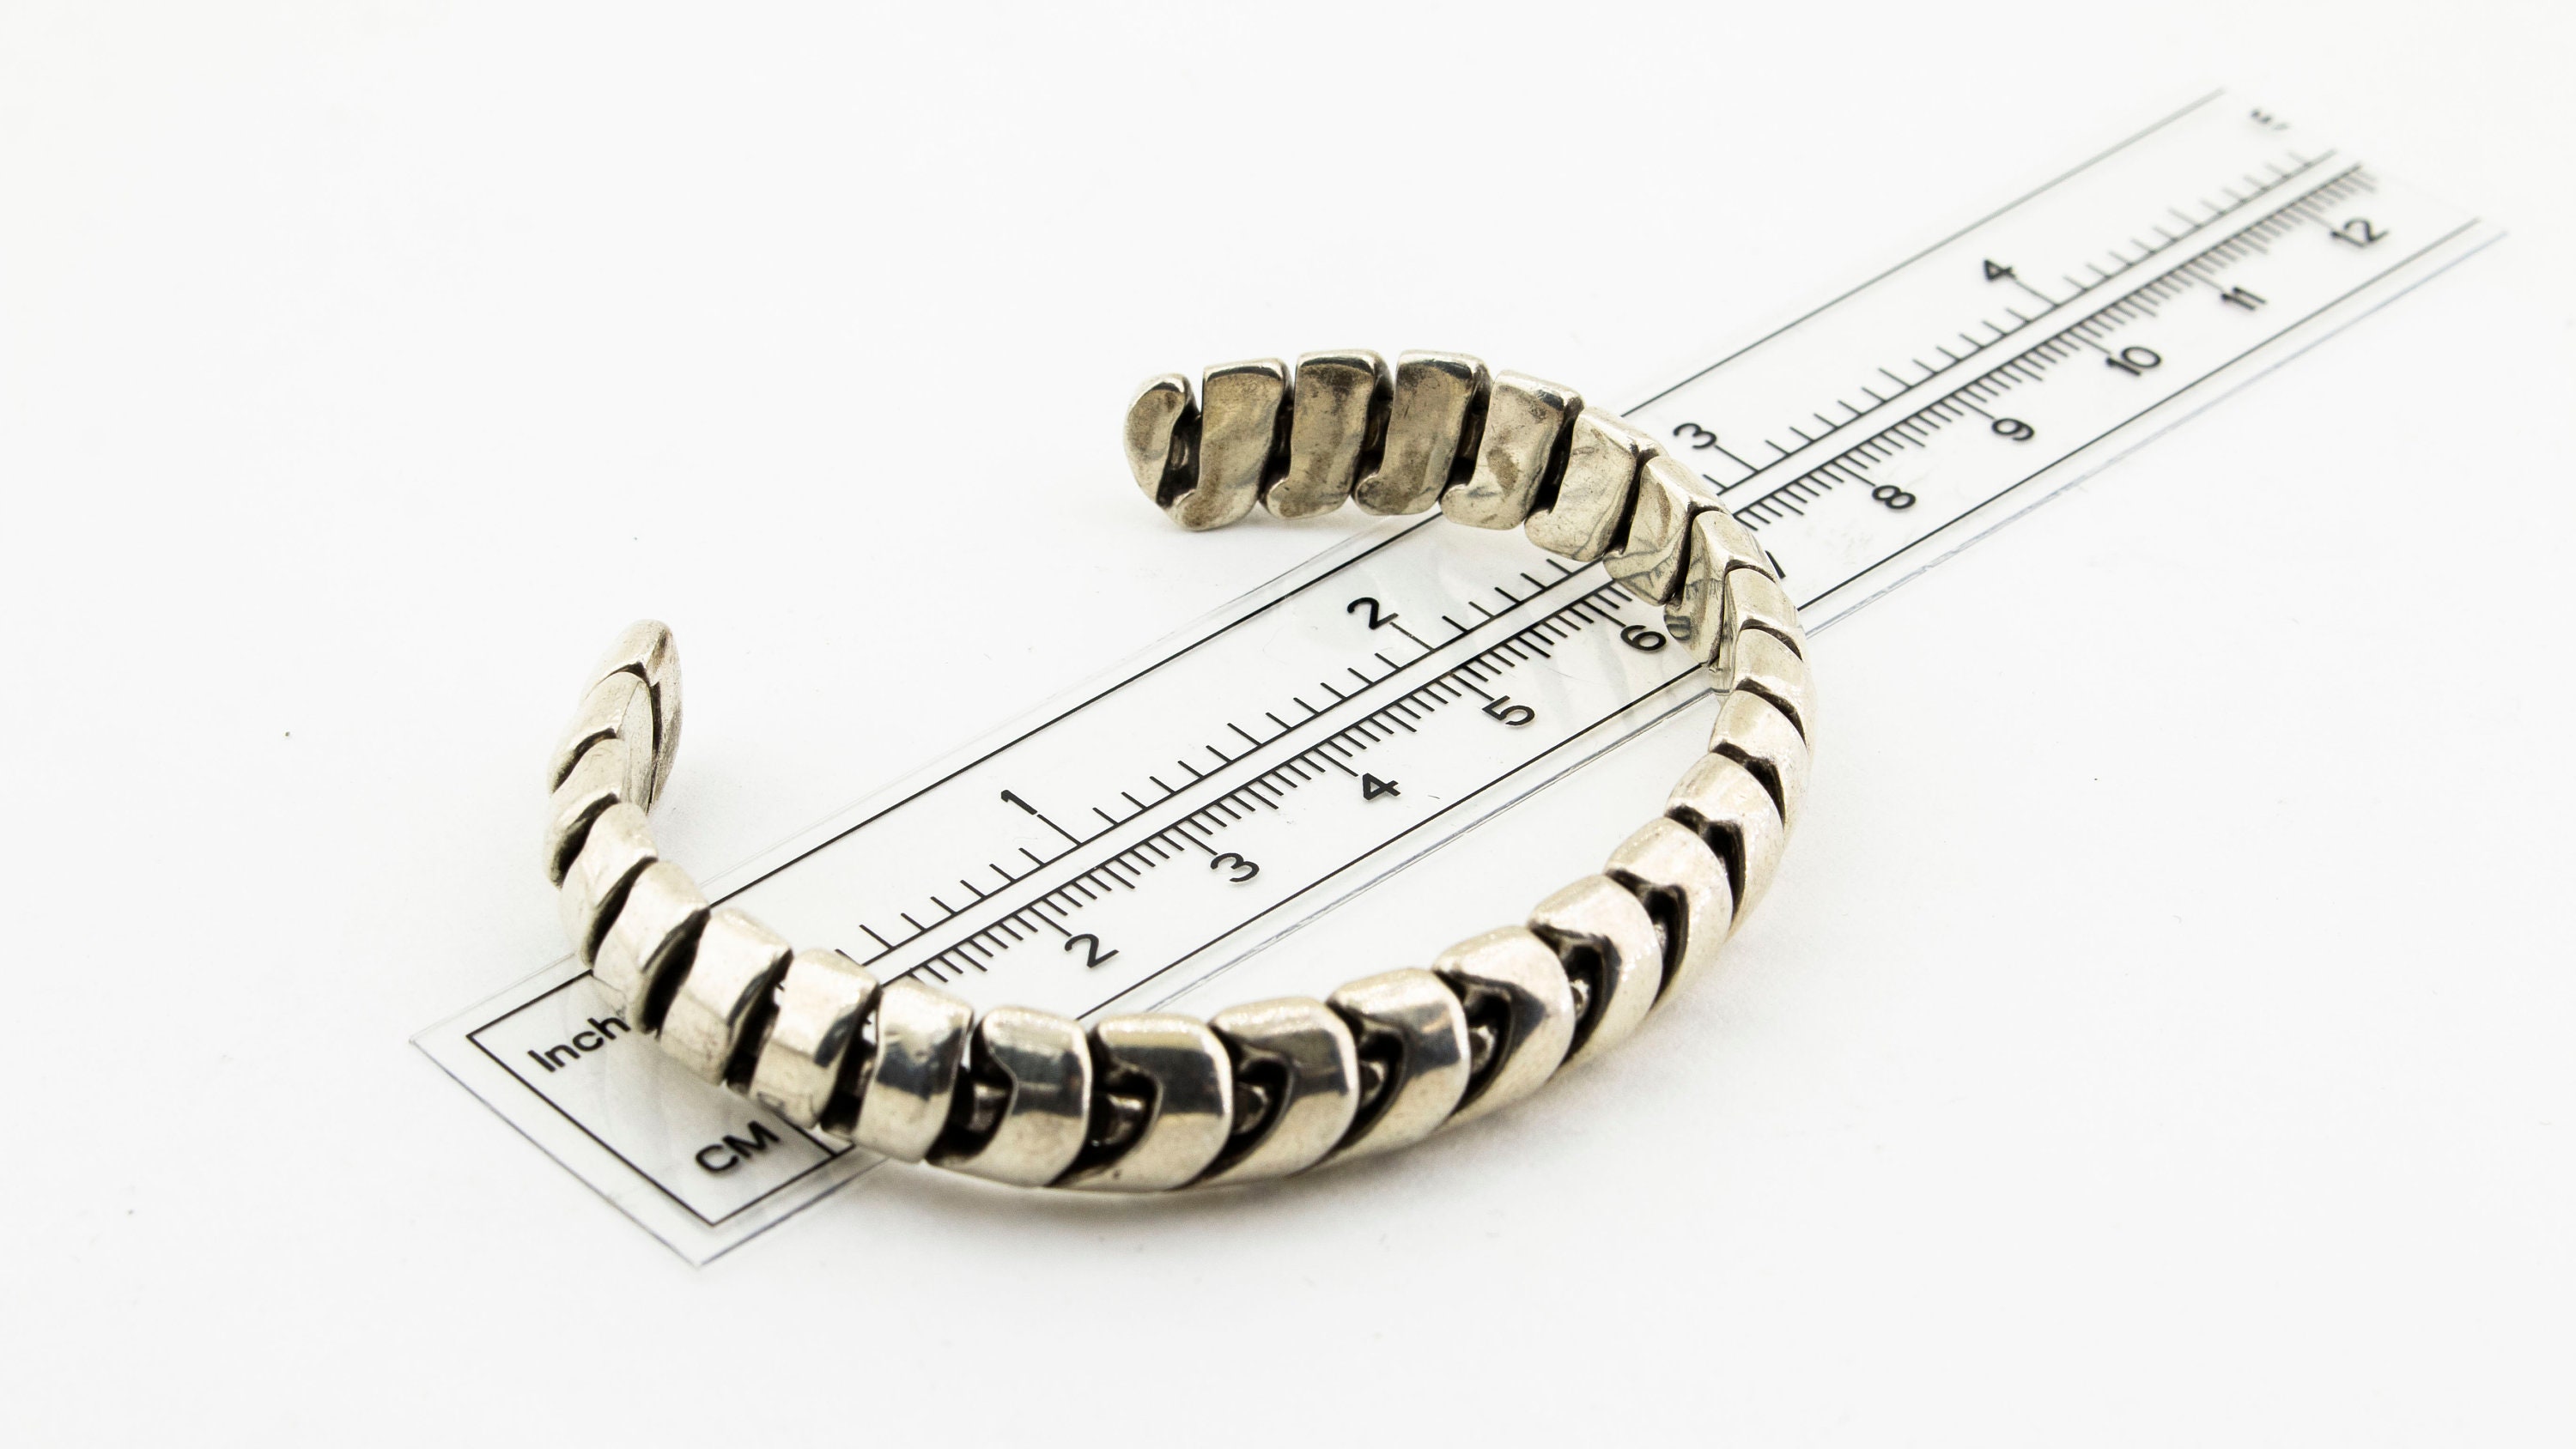 SL Bracelet Set – Harwell Designs